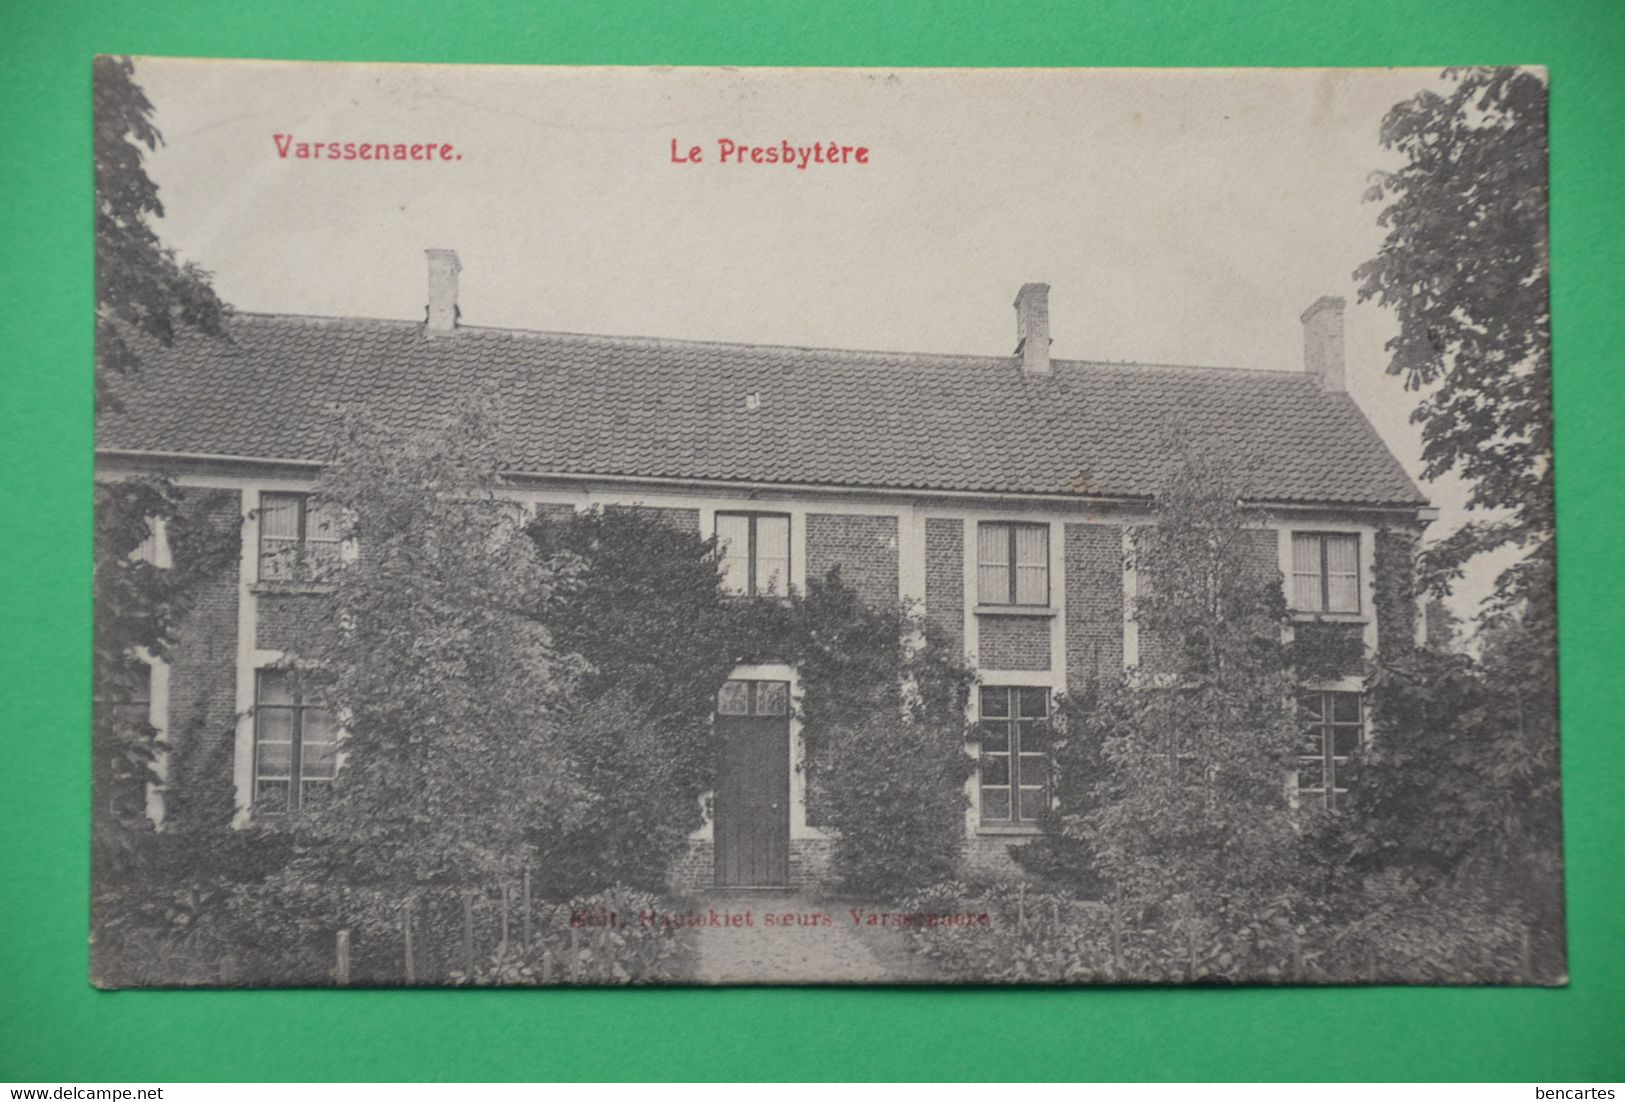 Varssenare 1905: Le Presbytère. Rare - Jabbeke